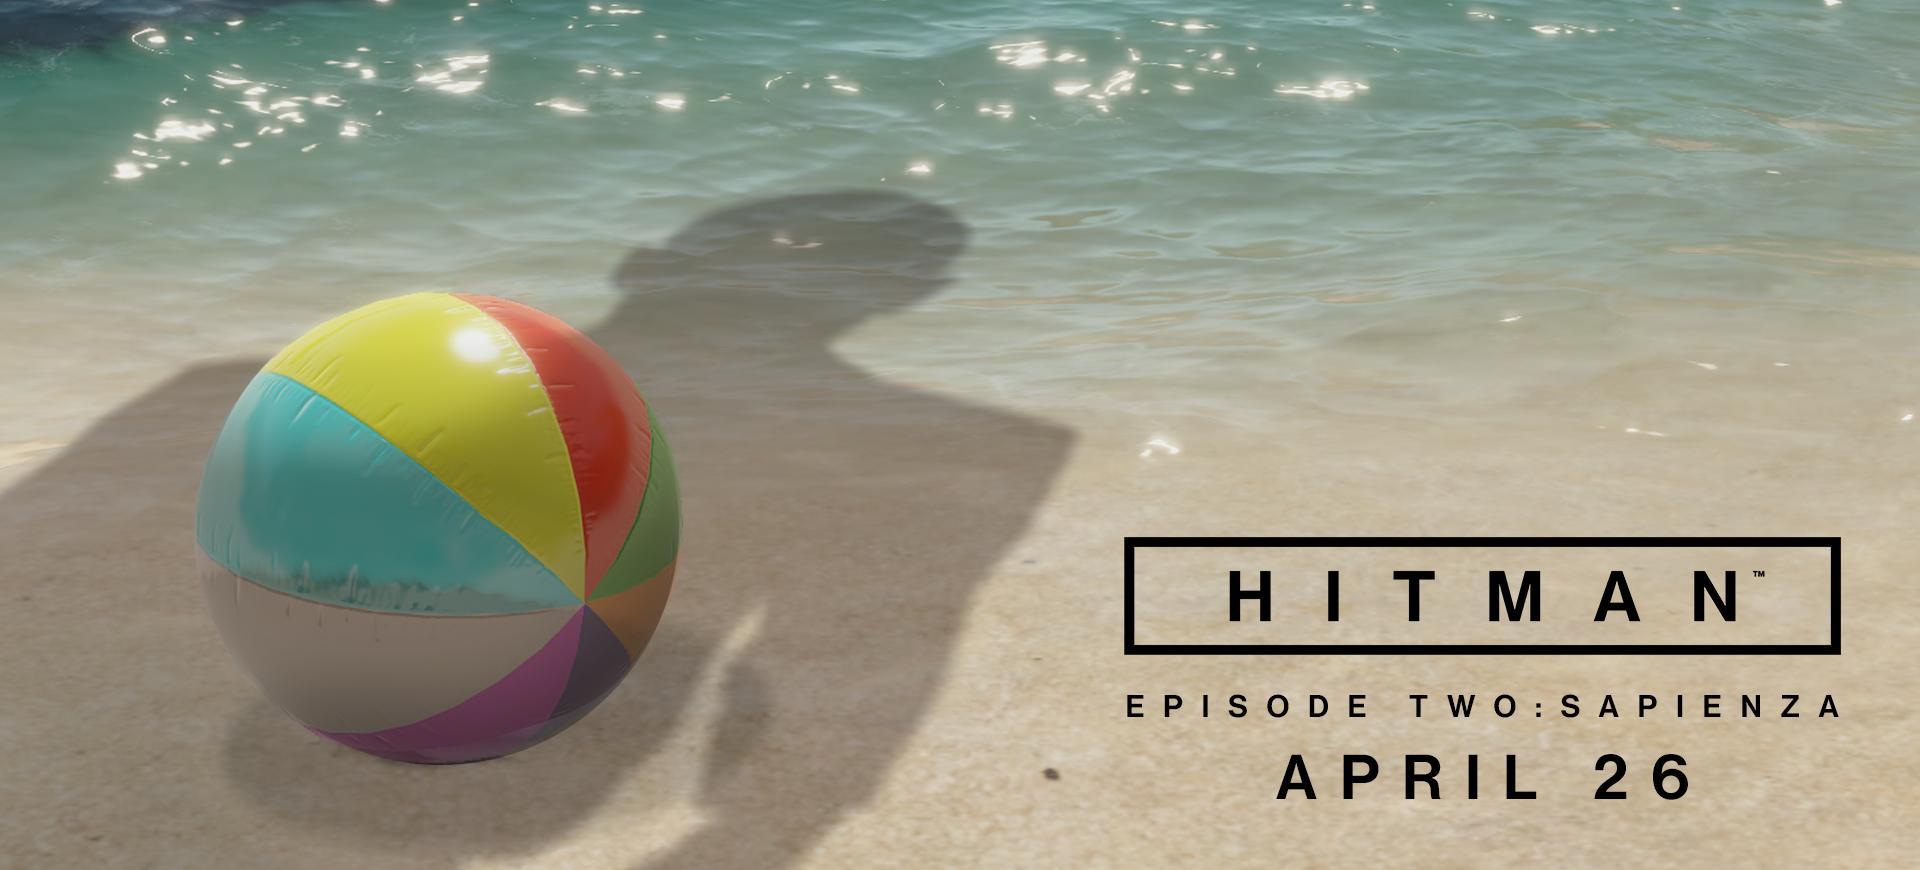 Hitman công bố thời gian phát hành "Episode 2: Sapienza" - Tin Game